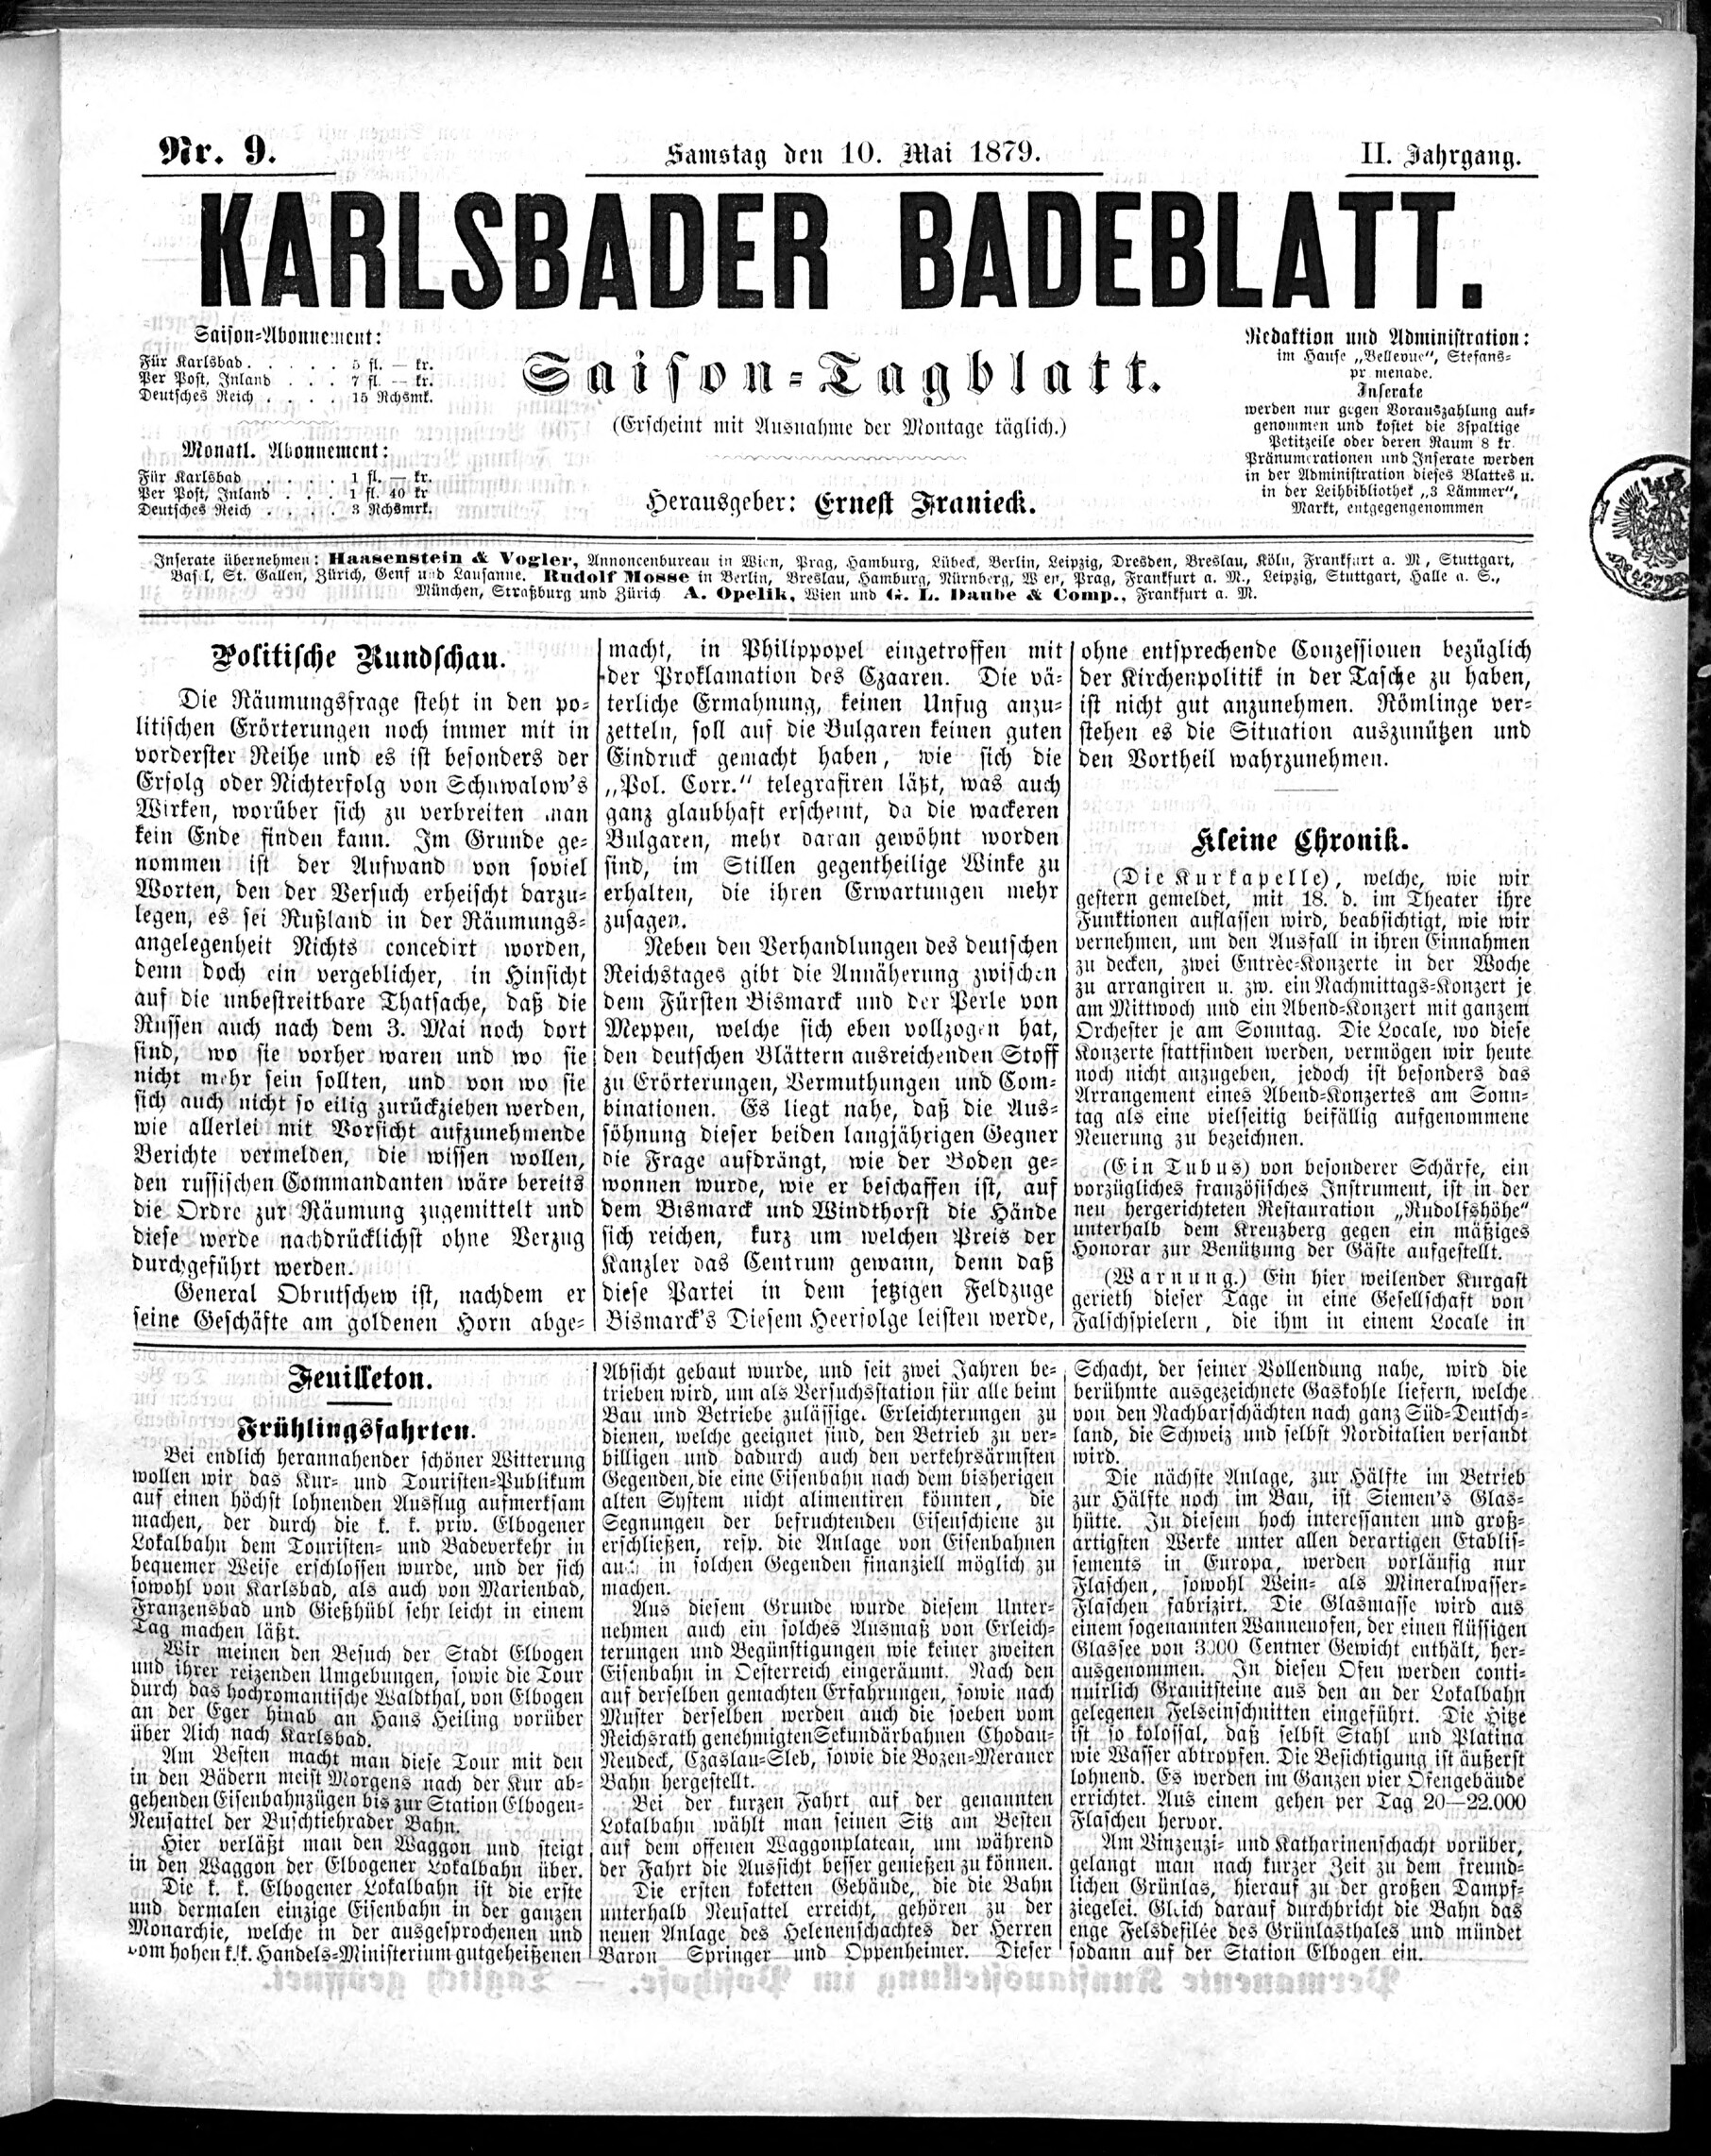 1. karlsbader-badeblatt-1879-05-10-n9_0205